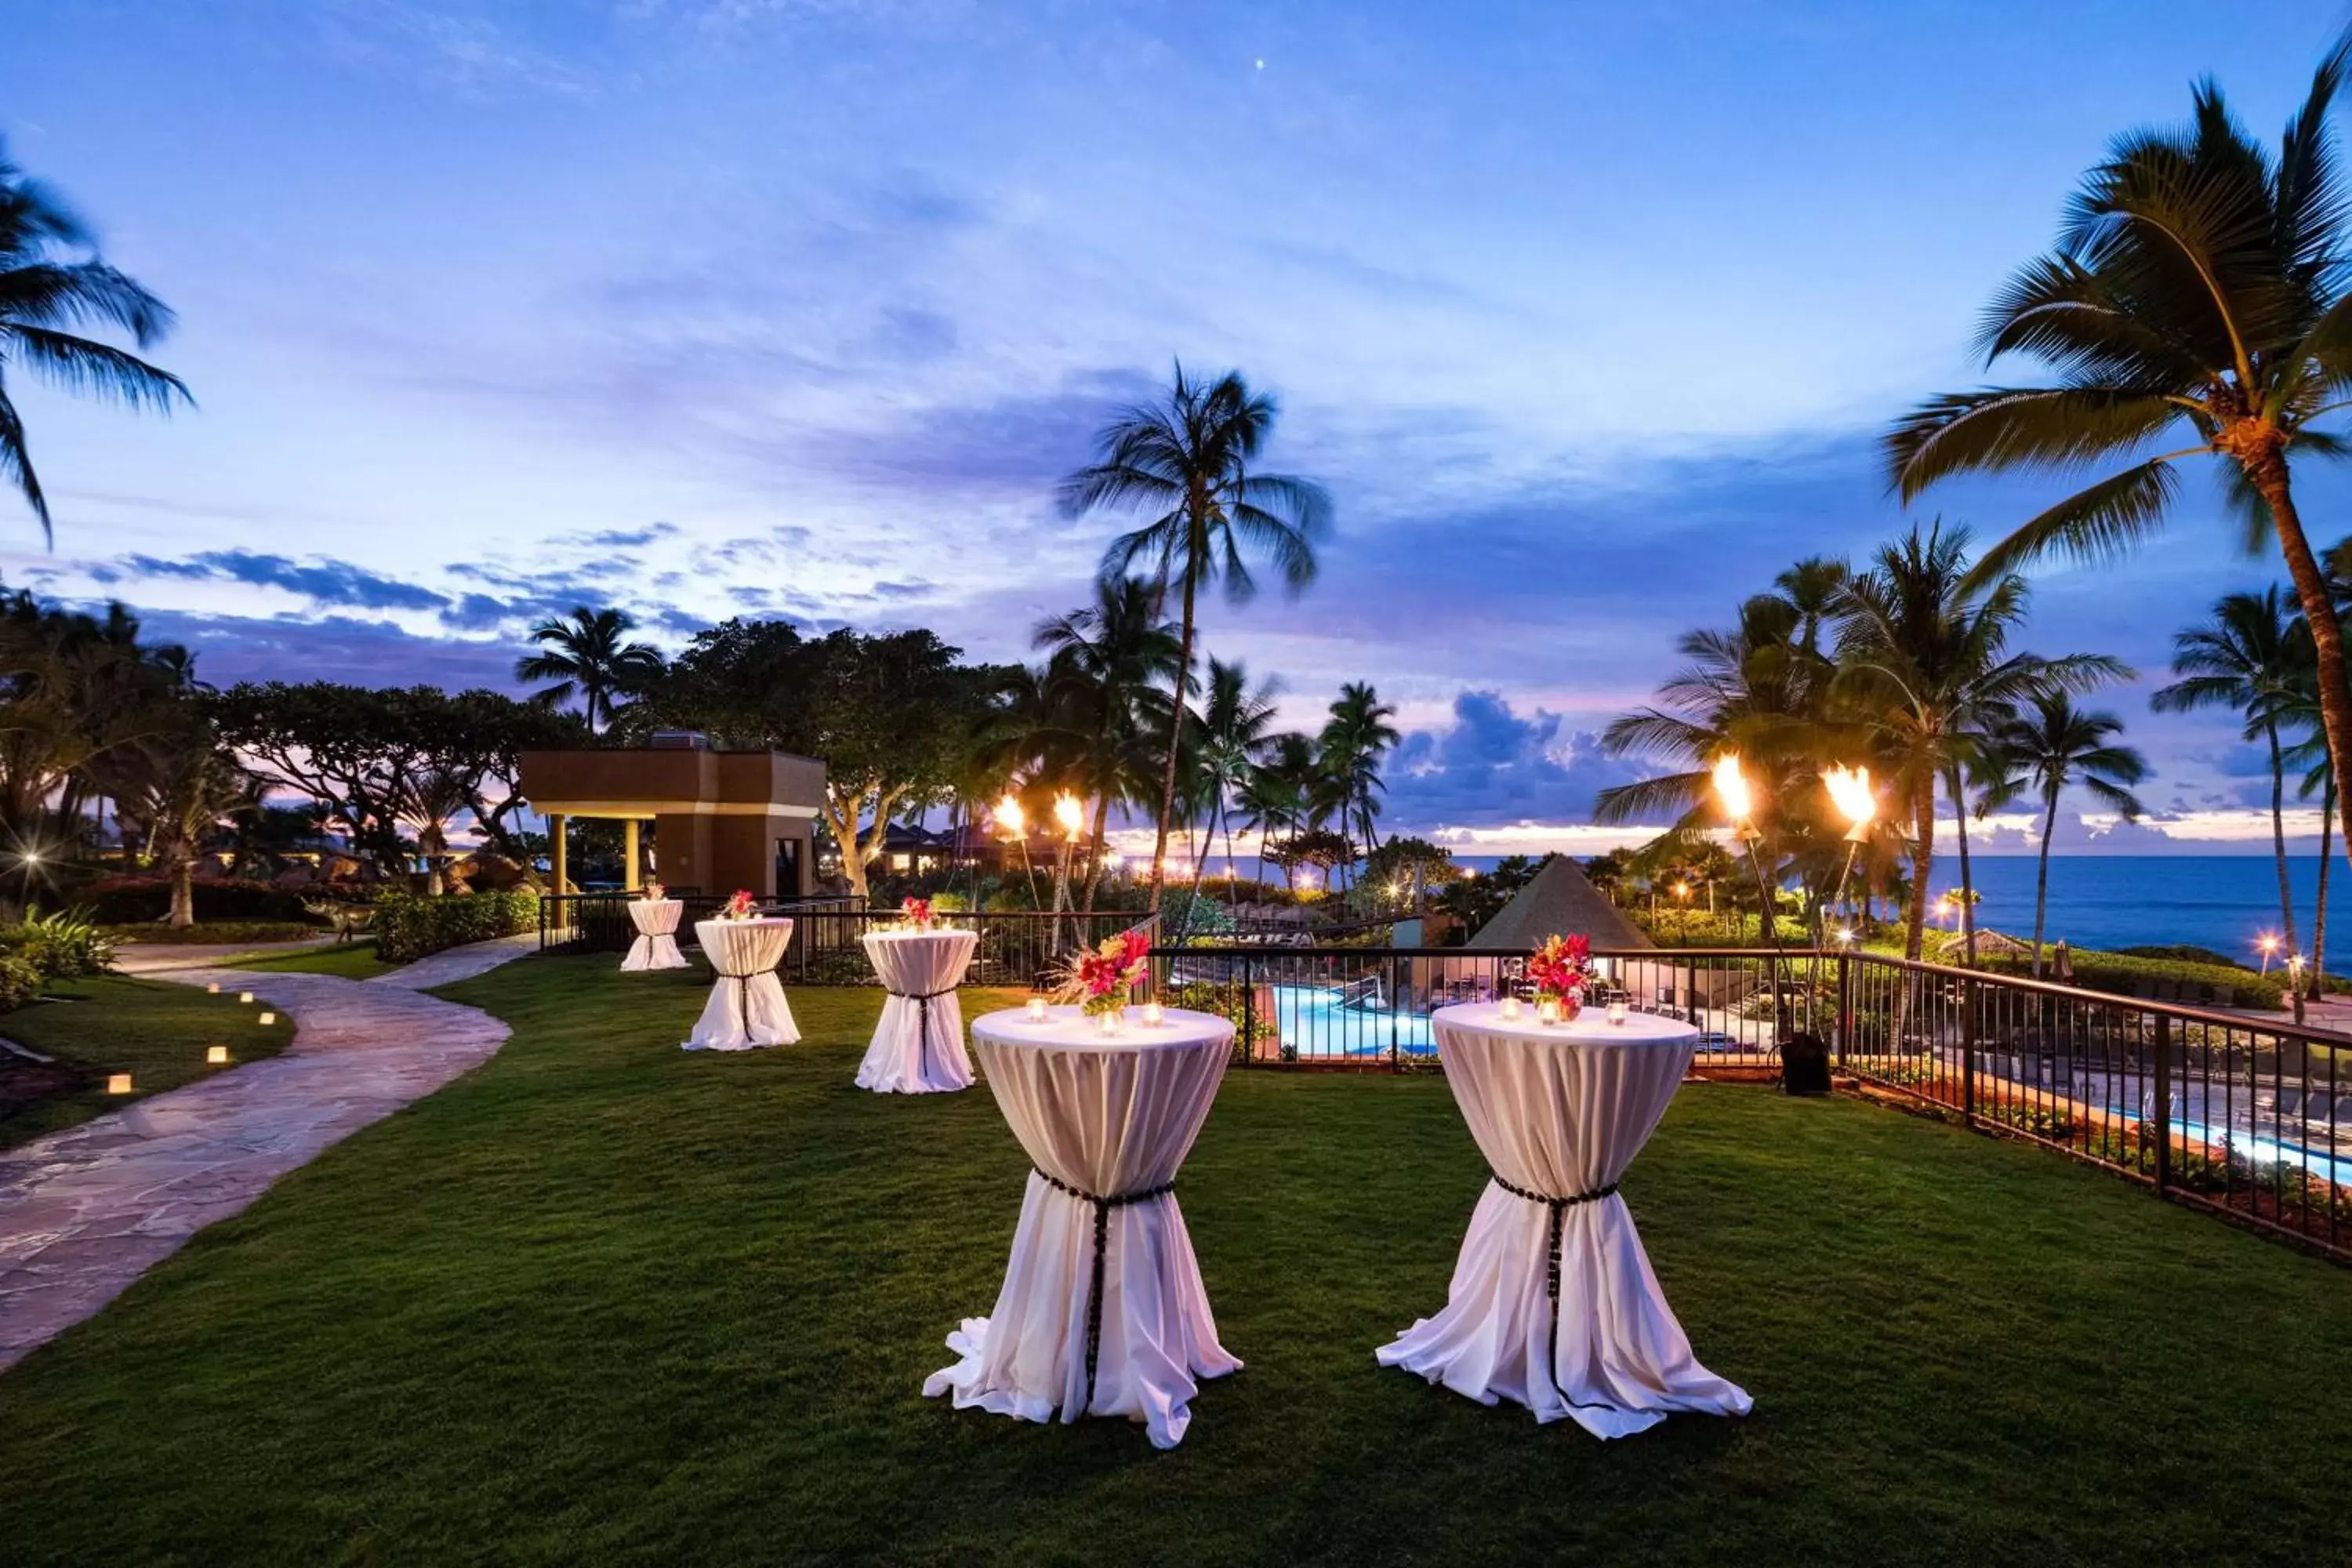 Garden, Banquet Facilities in Hilton Waikoloa Village